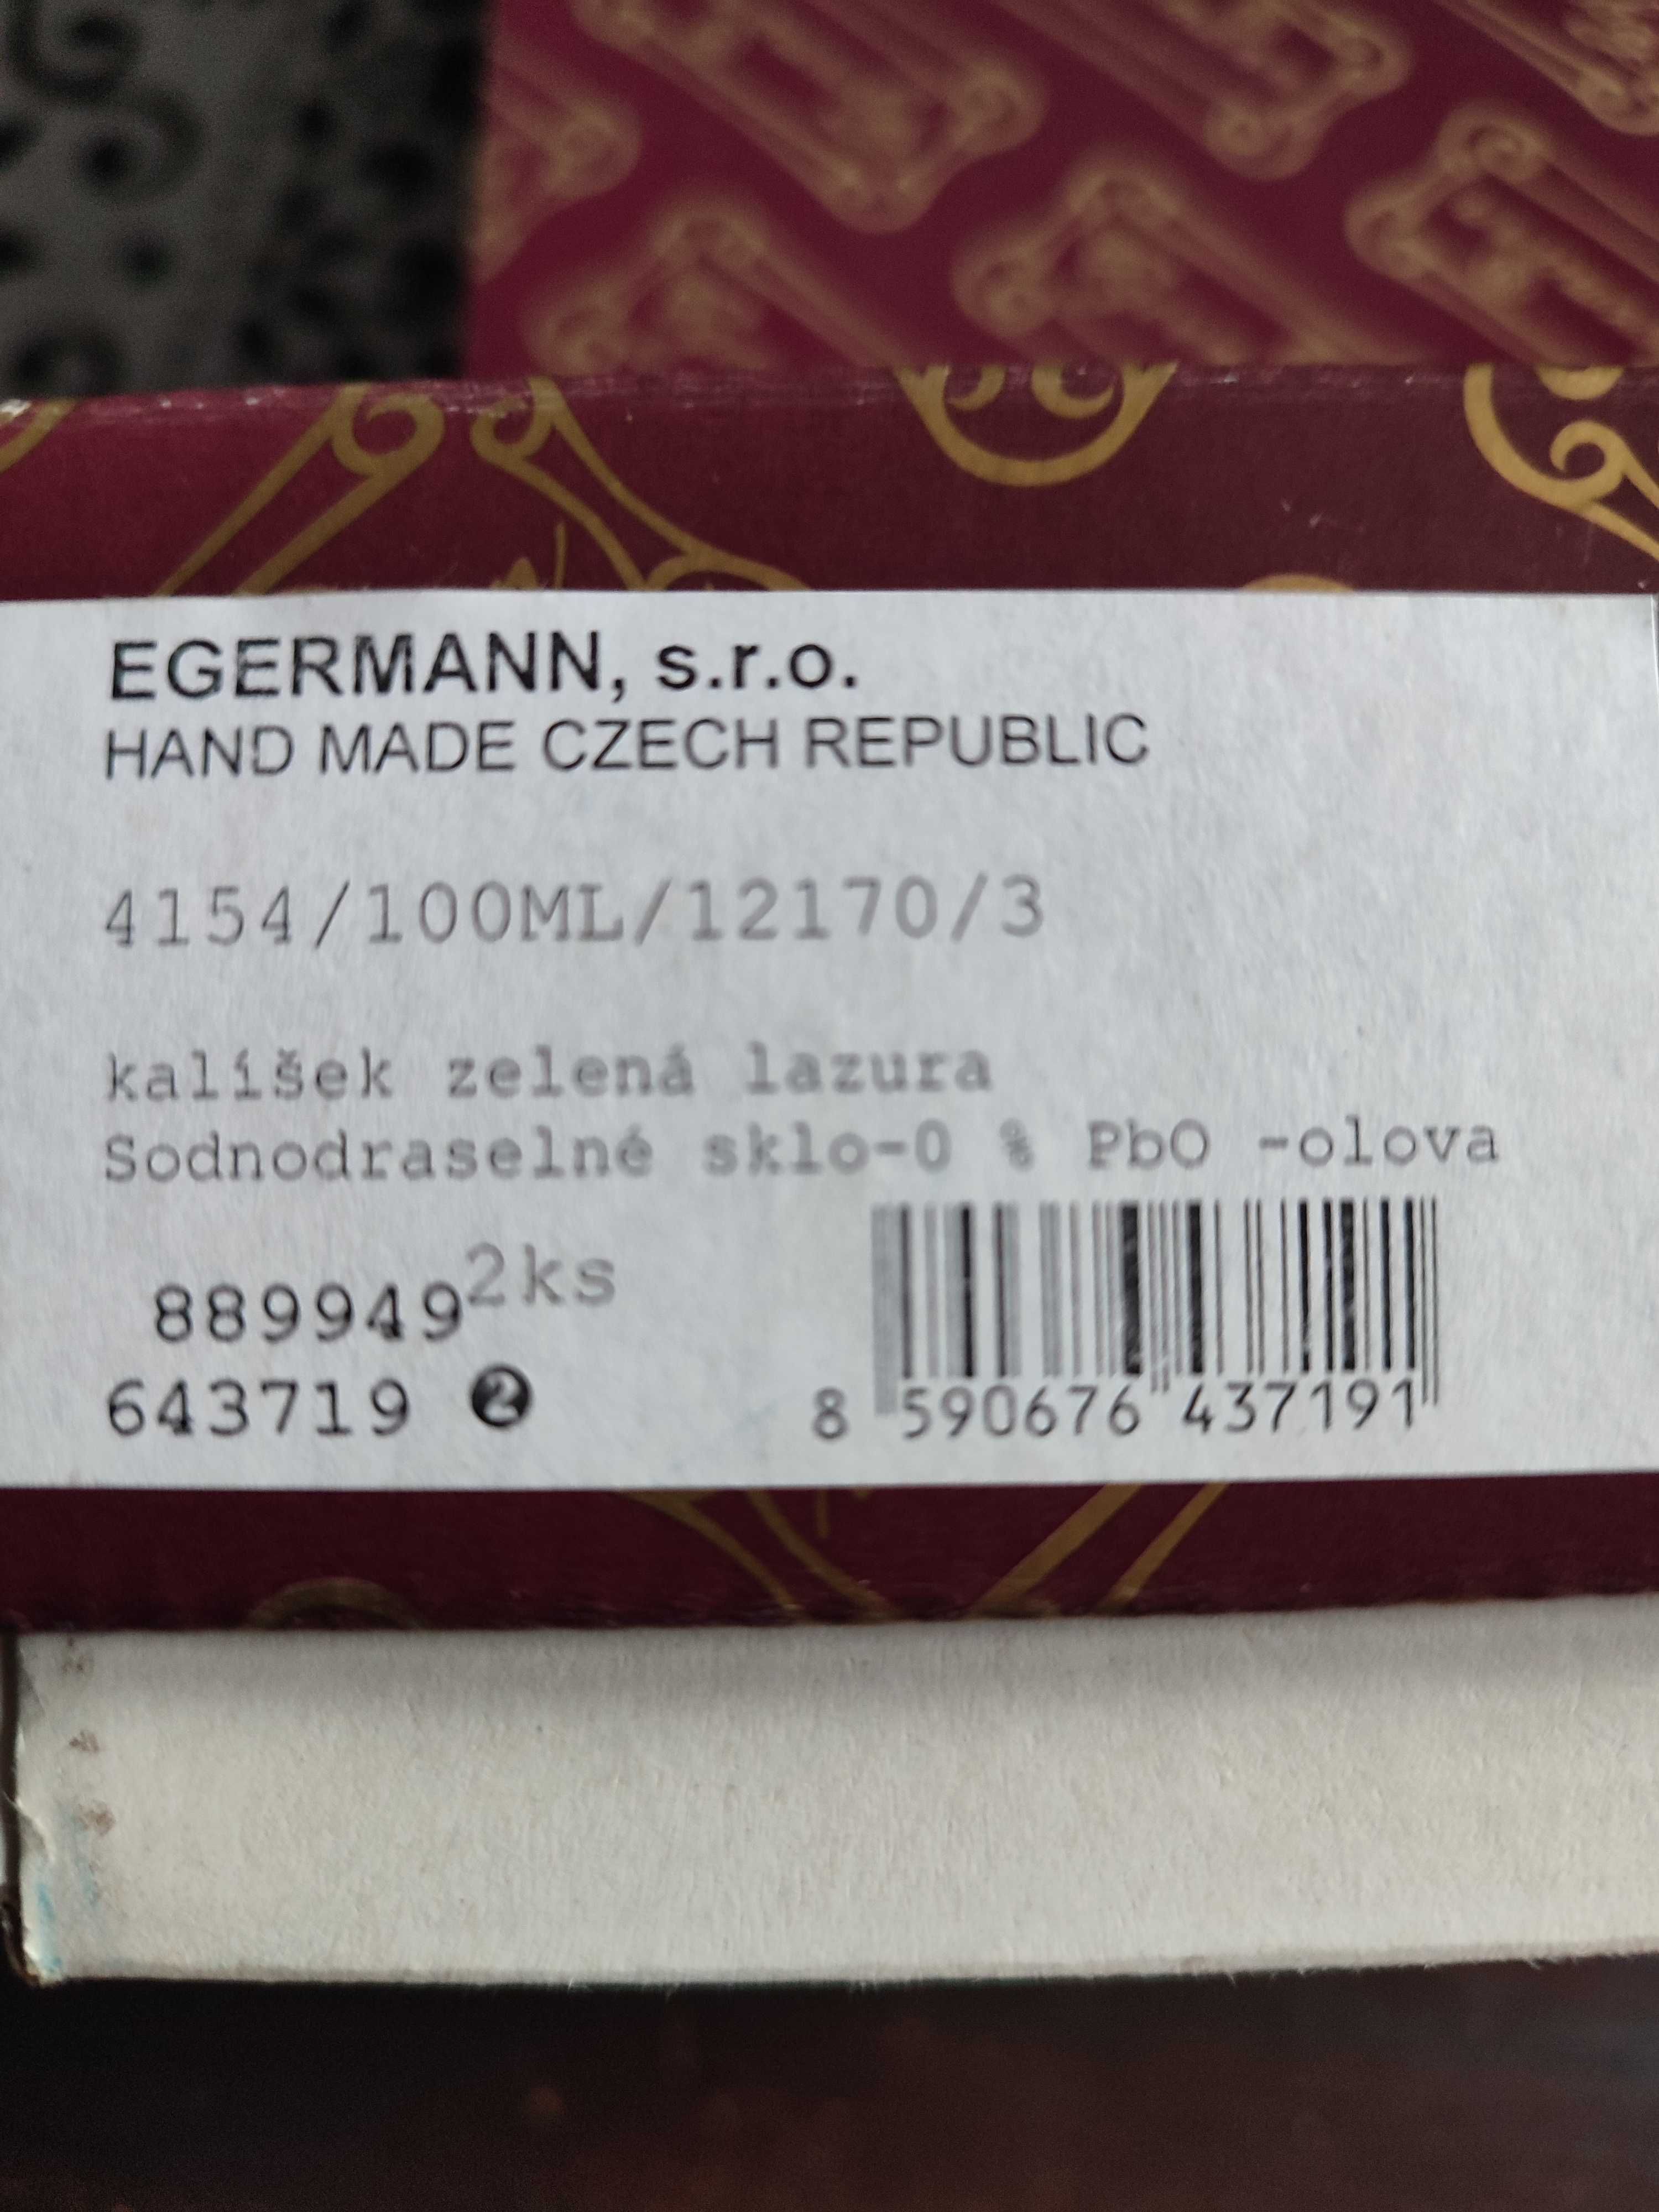 2 kieliszki Egermann